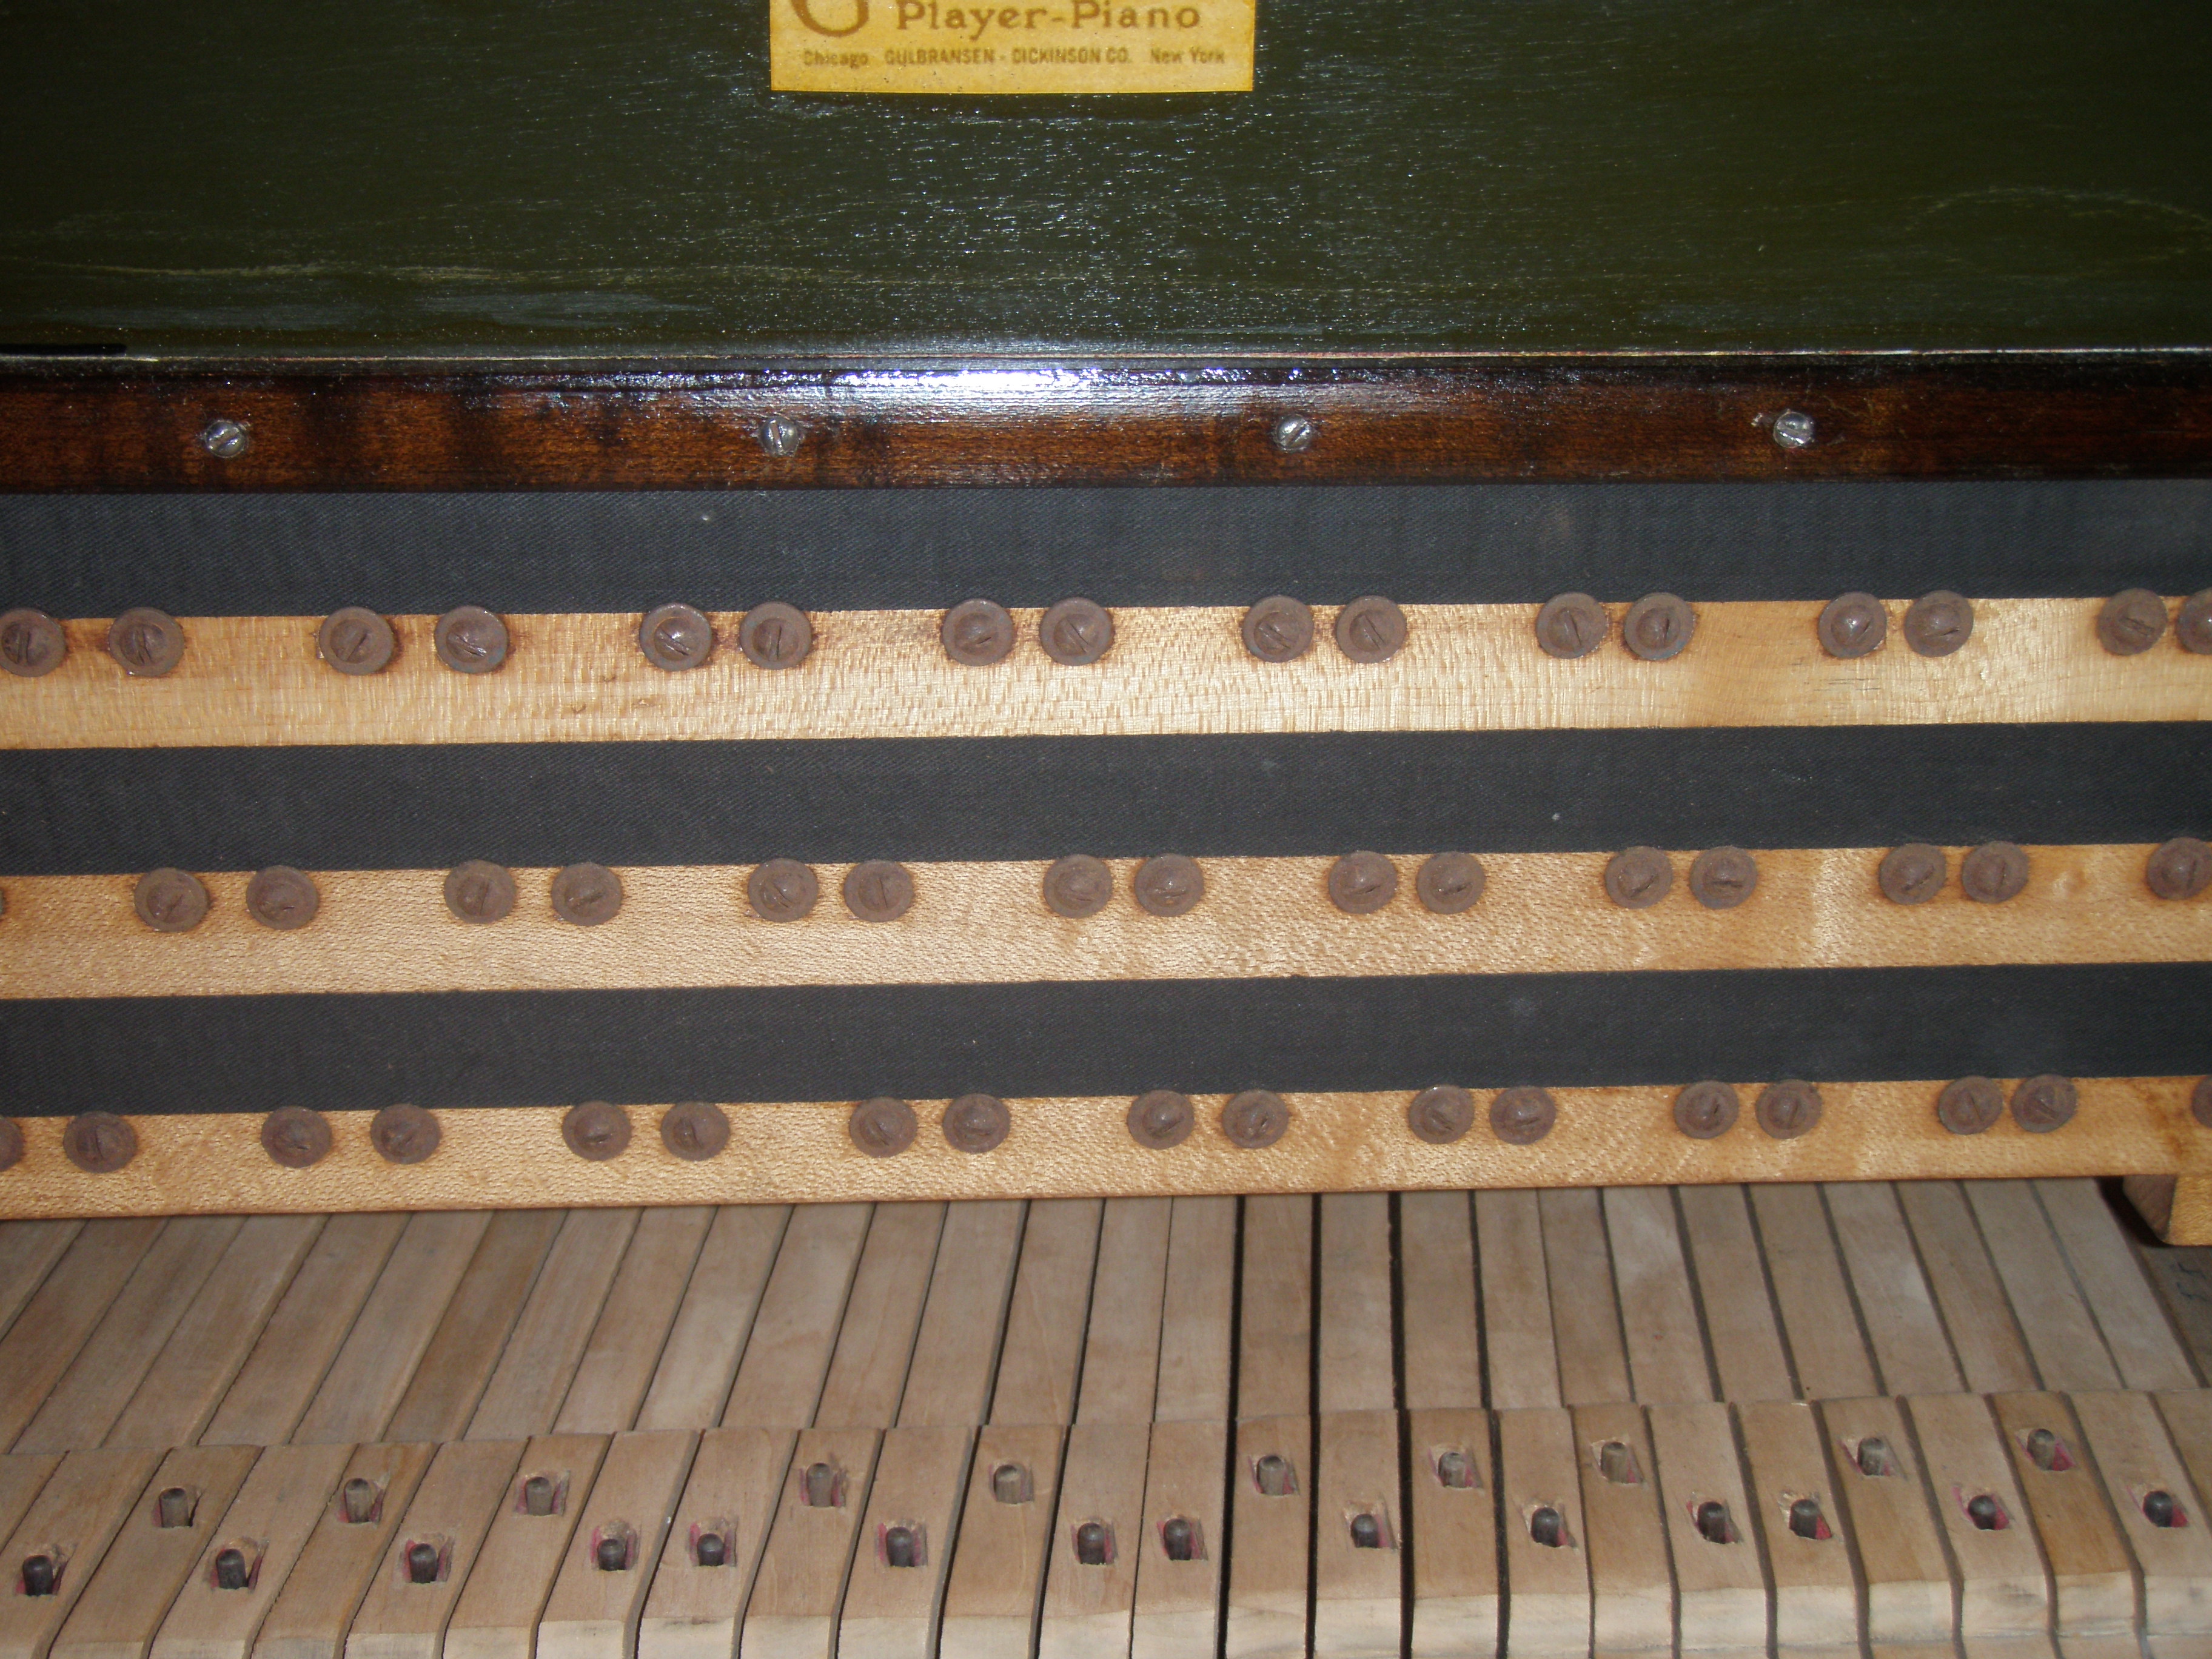 6 Cork Gaskets for Gulbransen 3 Tier Player Piano Unit Pneumatics New 